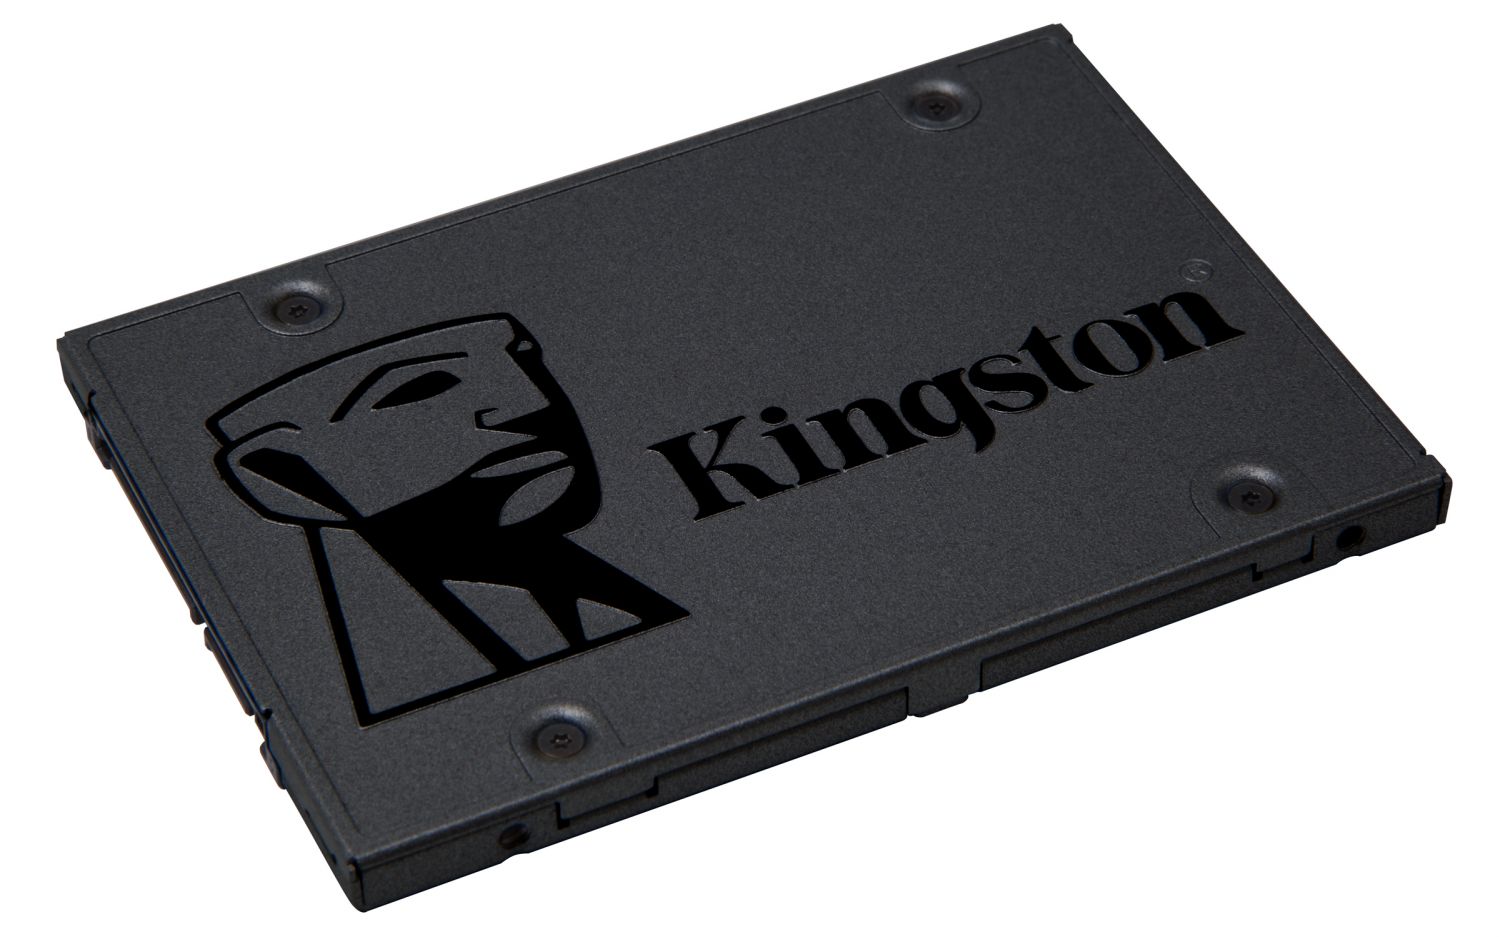 SA400S37/240G - SSD Kingston A400 2.5